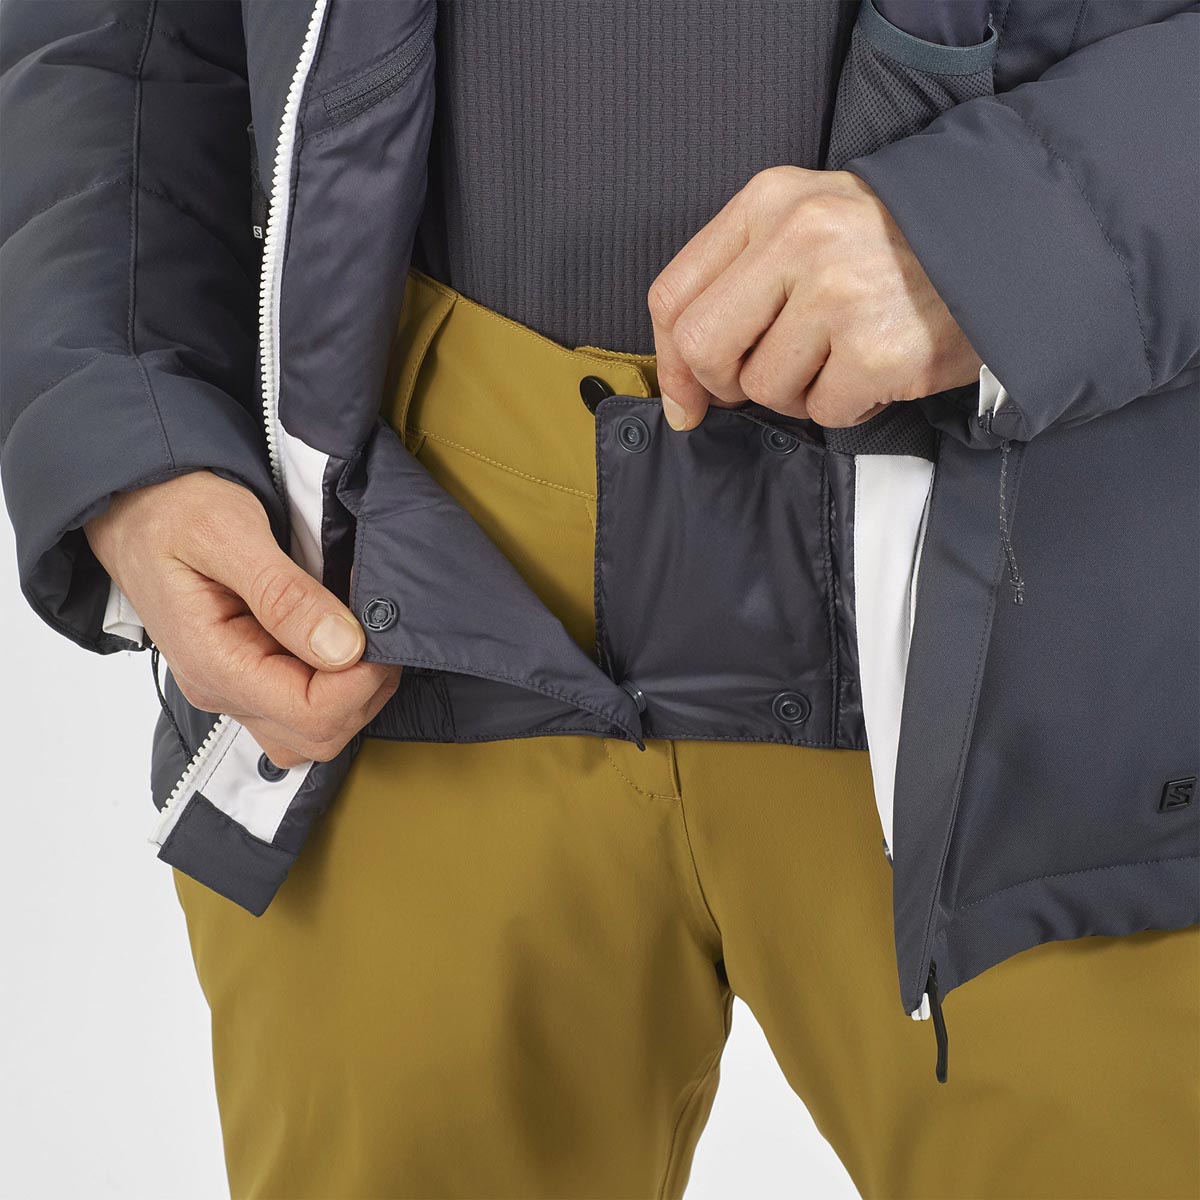 Куртка лыжная NEW PREVAIL JKT W